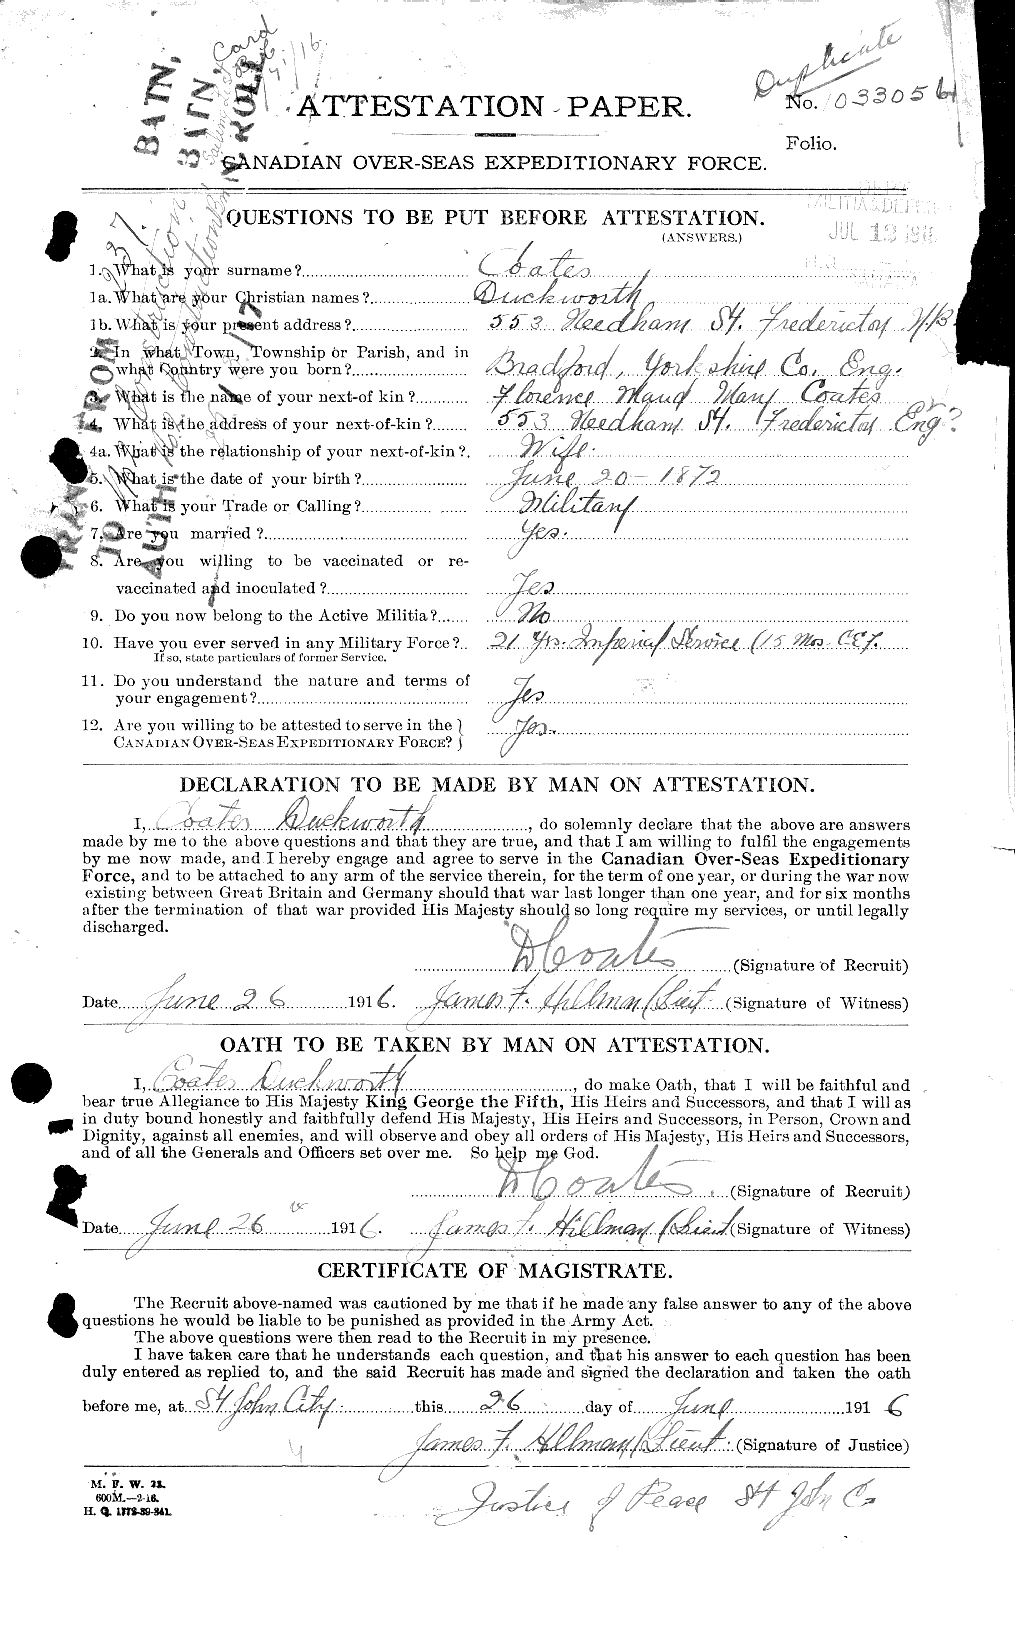 Dossiers du Personnel de la Première Guerre mondiale - CEC 025610a